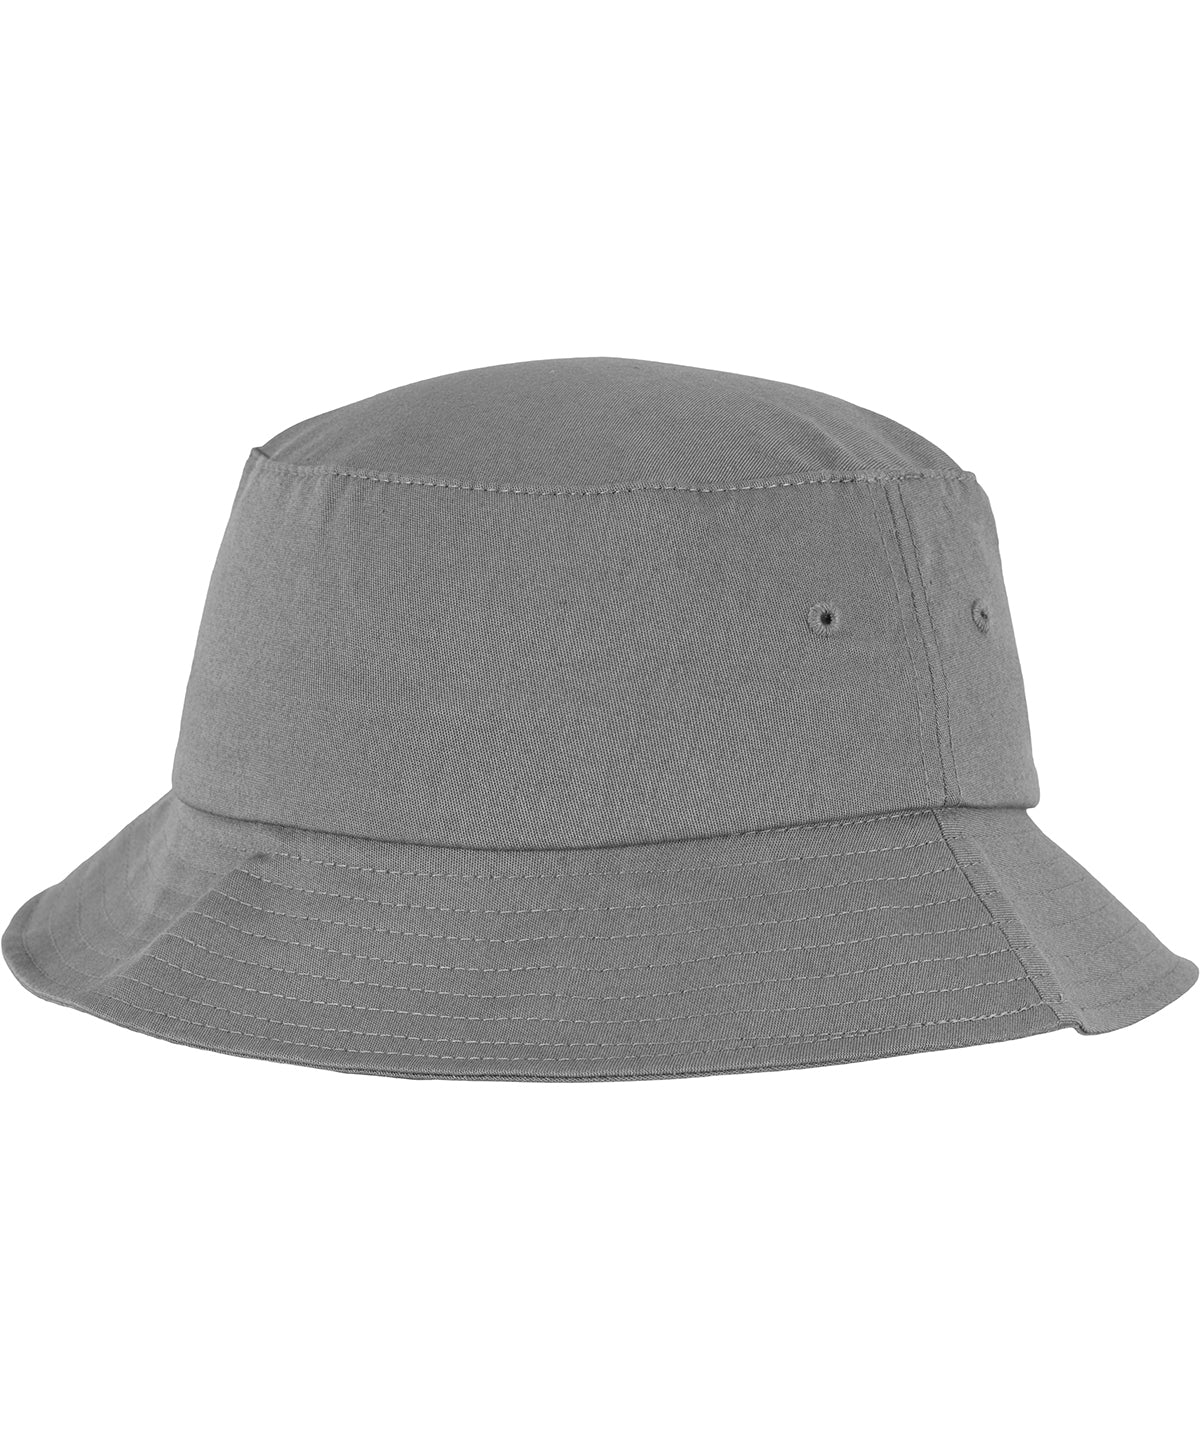 Húfur - Flexfit Cotton Twill Bucket Hat (5003)